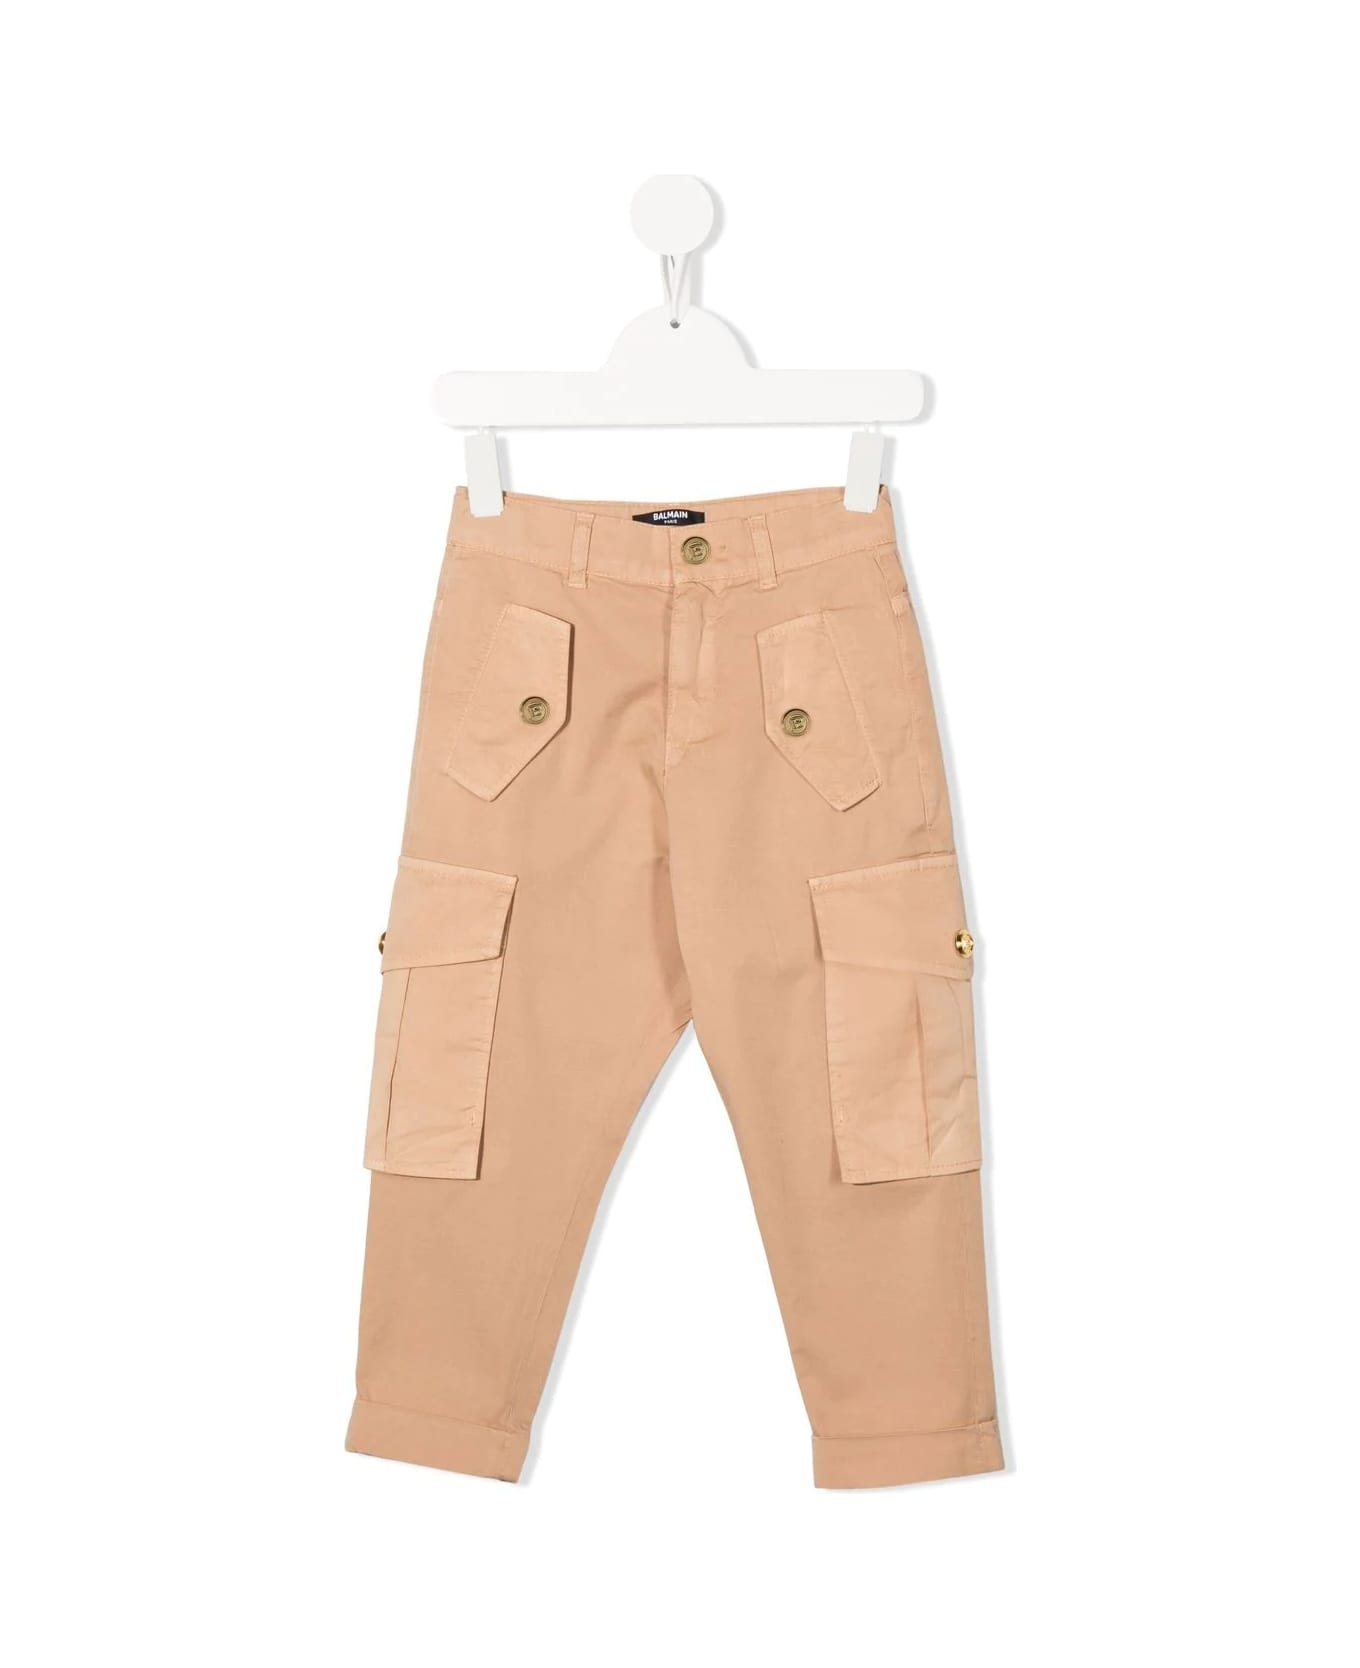 Balmain Kids Cargo Pants In Beige Cotton - Beige